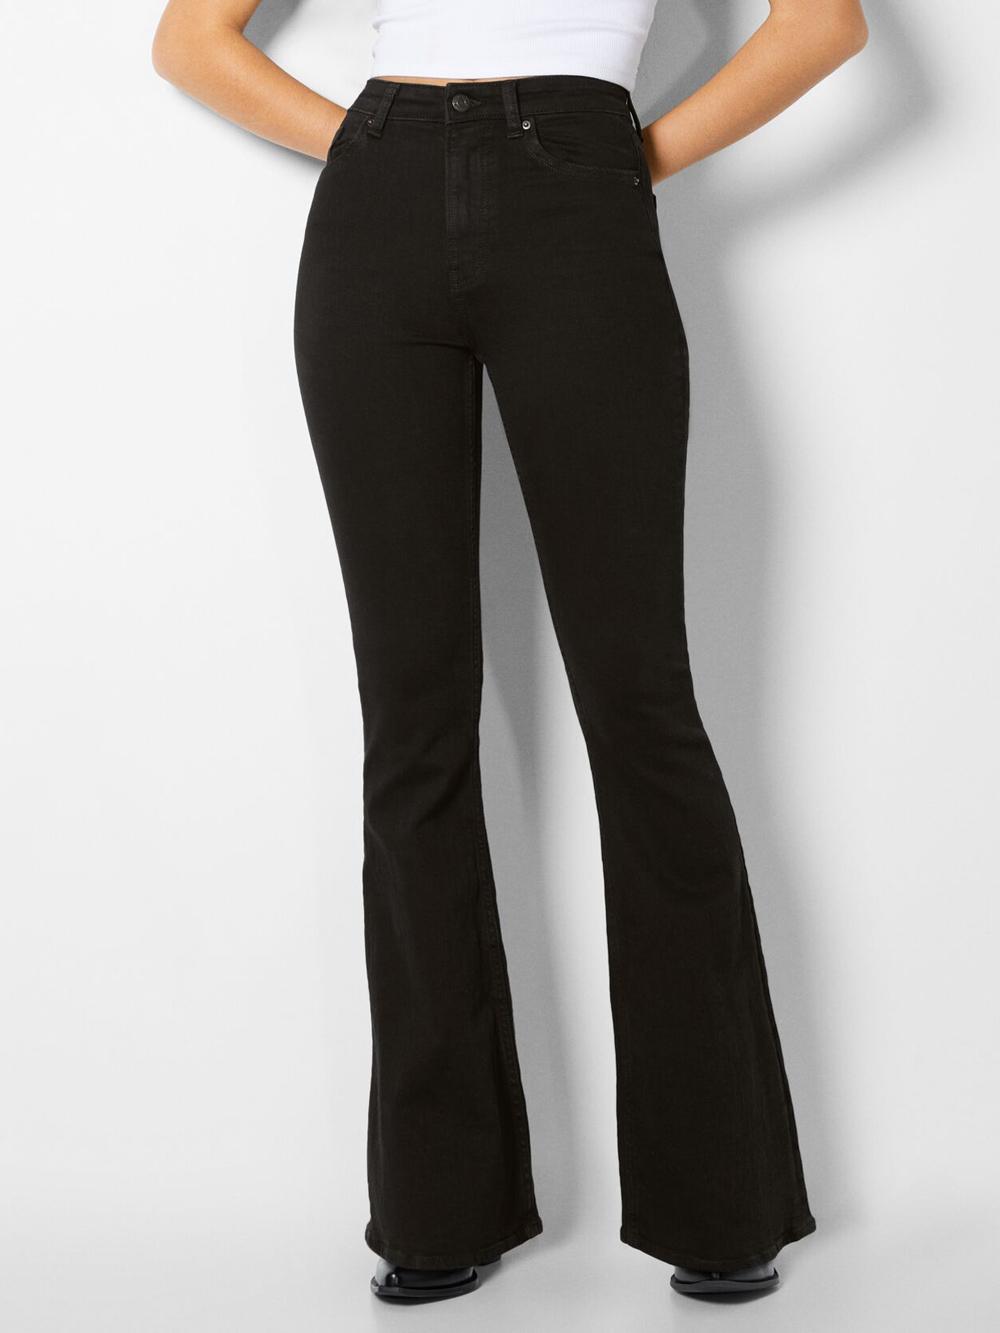 شلوار جین زنانه مدل بوت کات مشکی برند برشکا (سایز 34) - نلی استایل